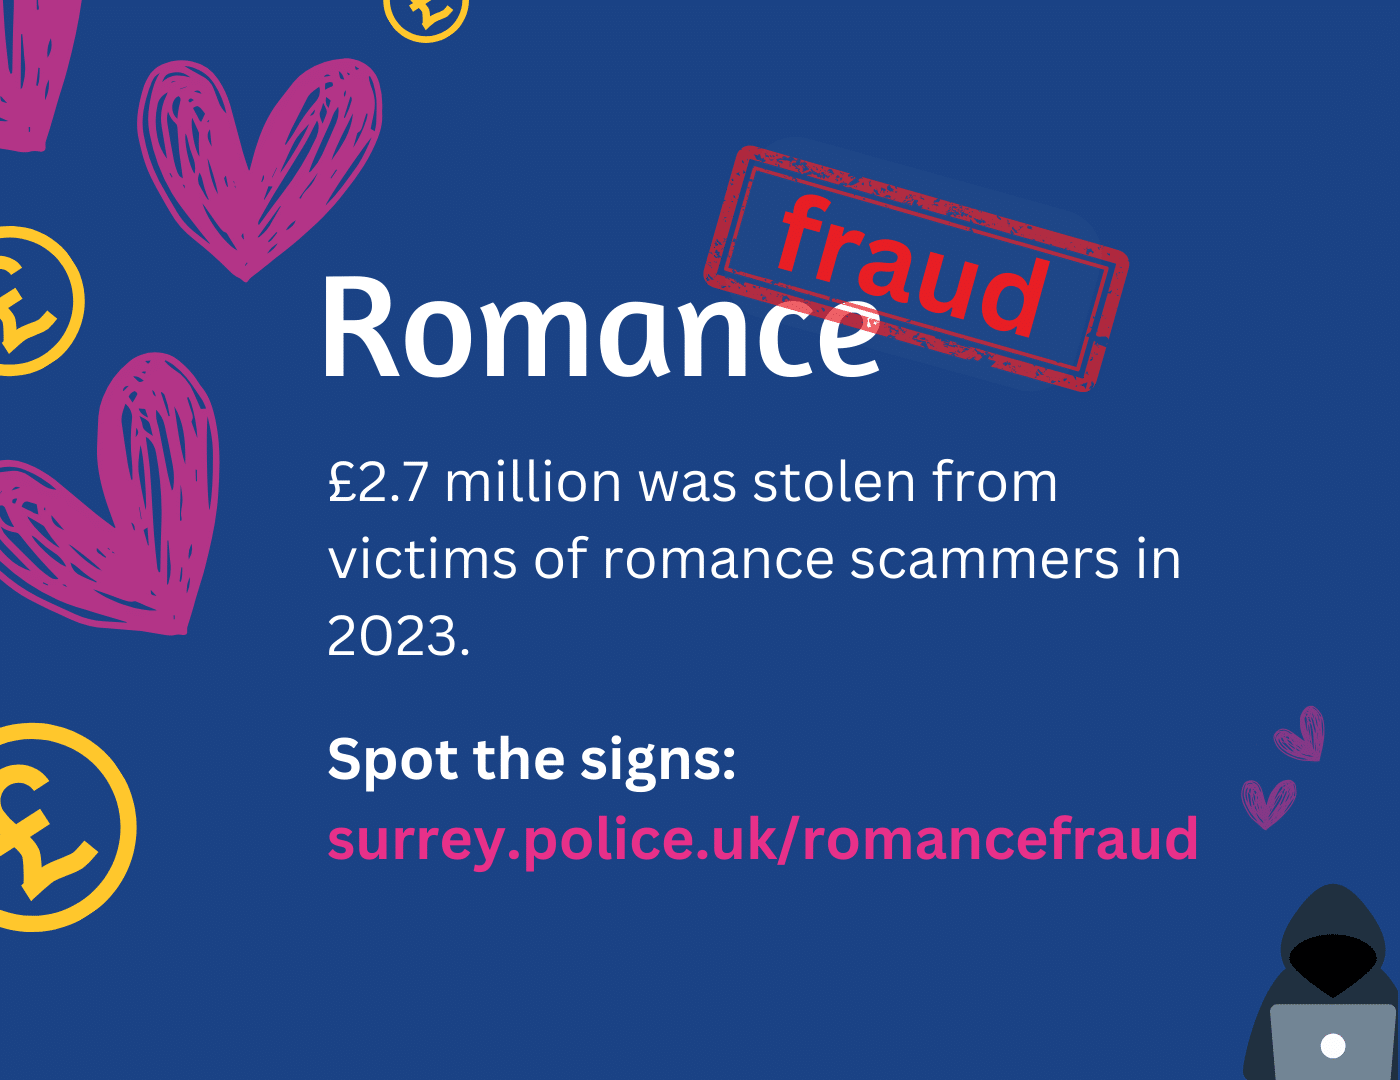 batakang romance fraud image nag-ingon nga £2.7m ang gikawat gikan sa mga biktima sa romance scammers niadtong 2023. Makita ang mga timailhan.